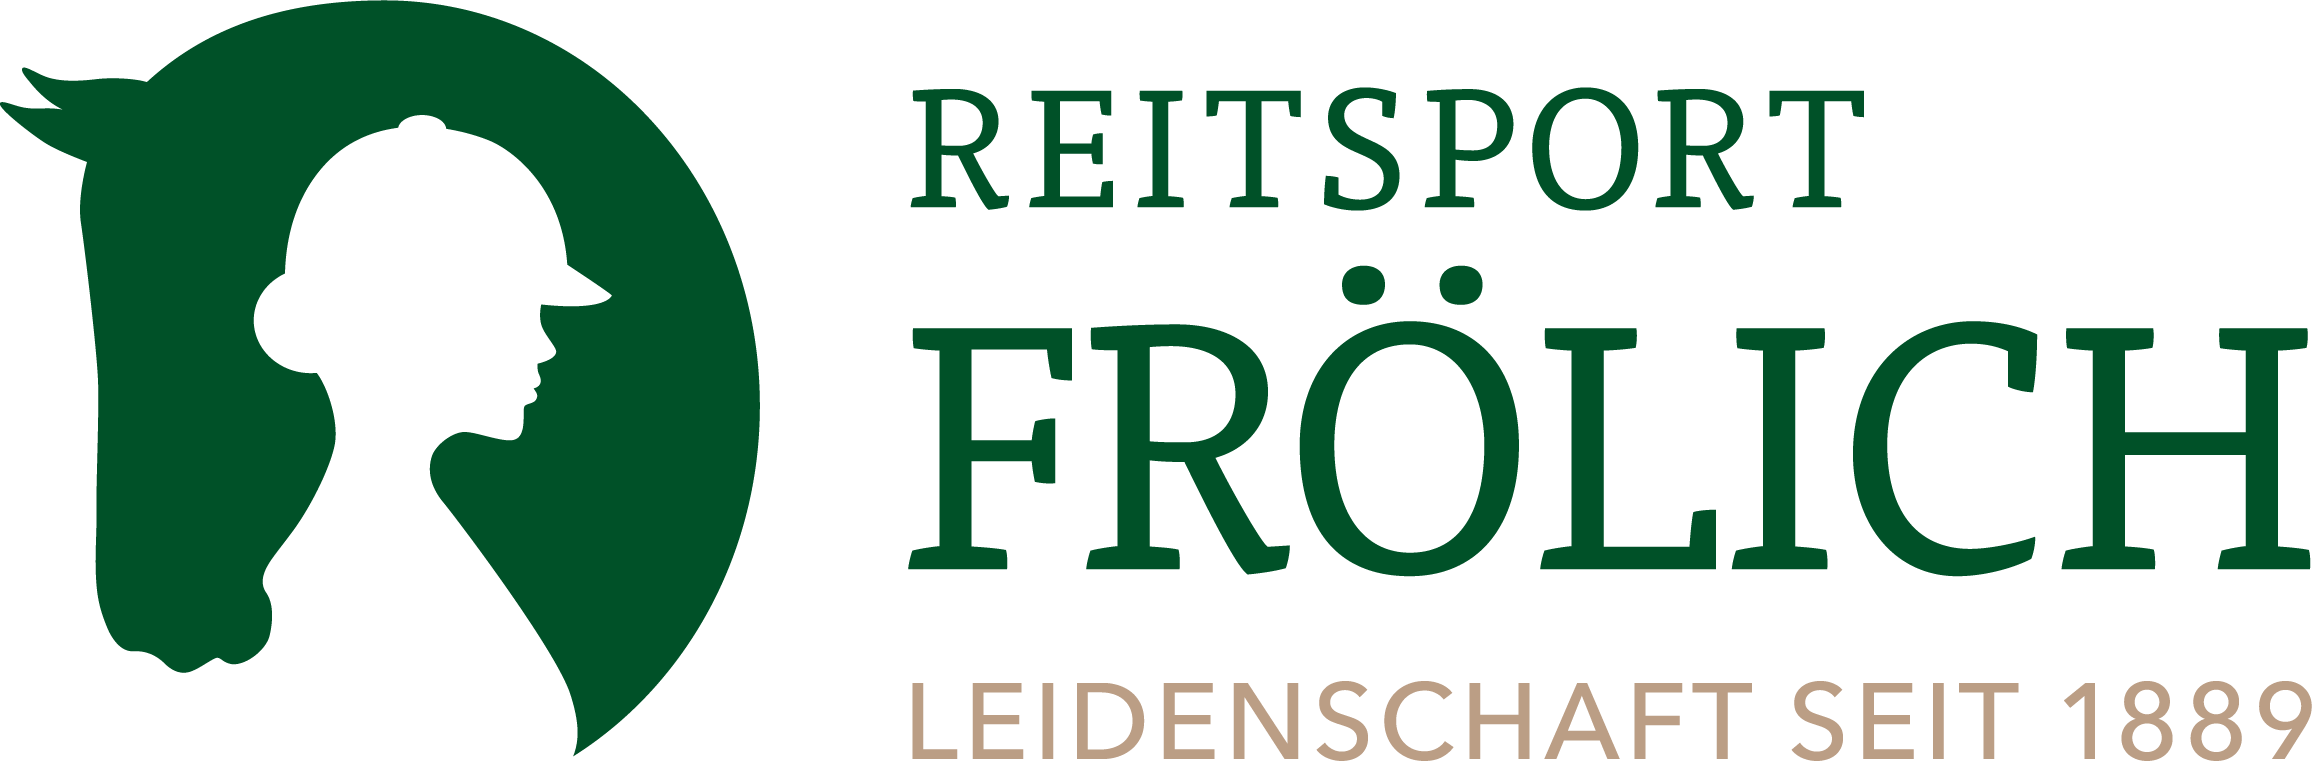 Reitsport_Froelich_Logo_RGB_300dpi